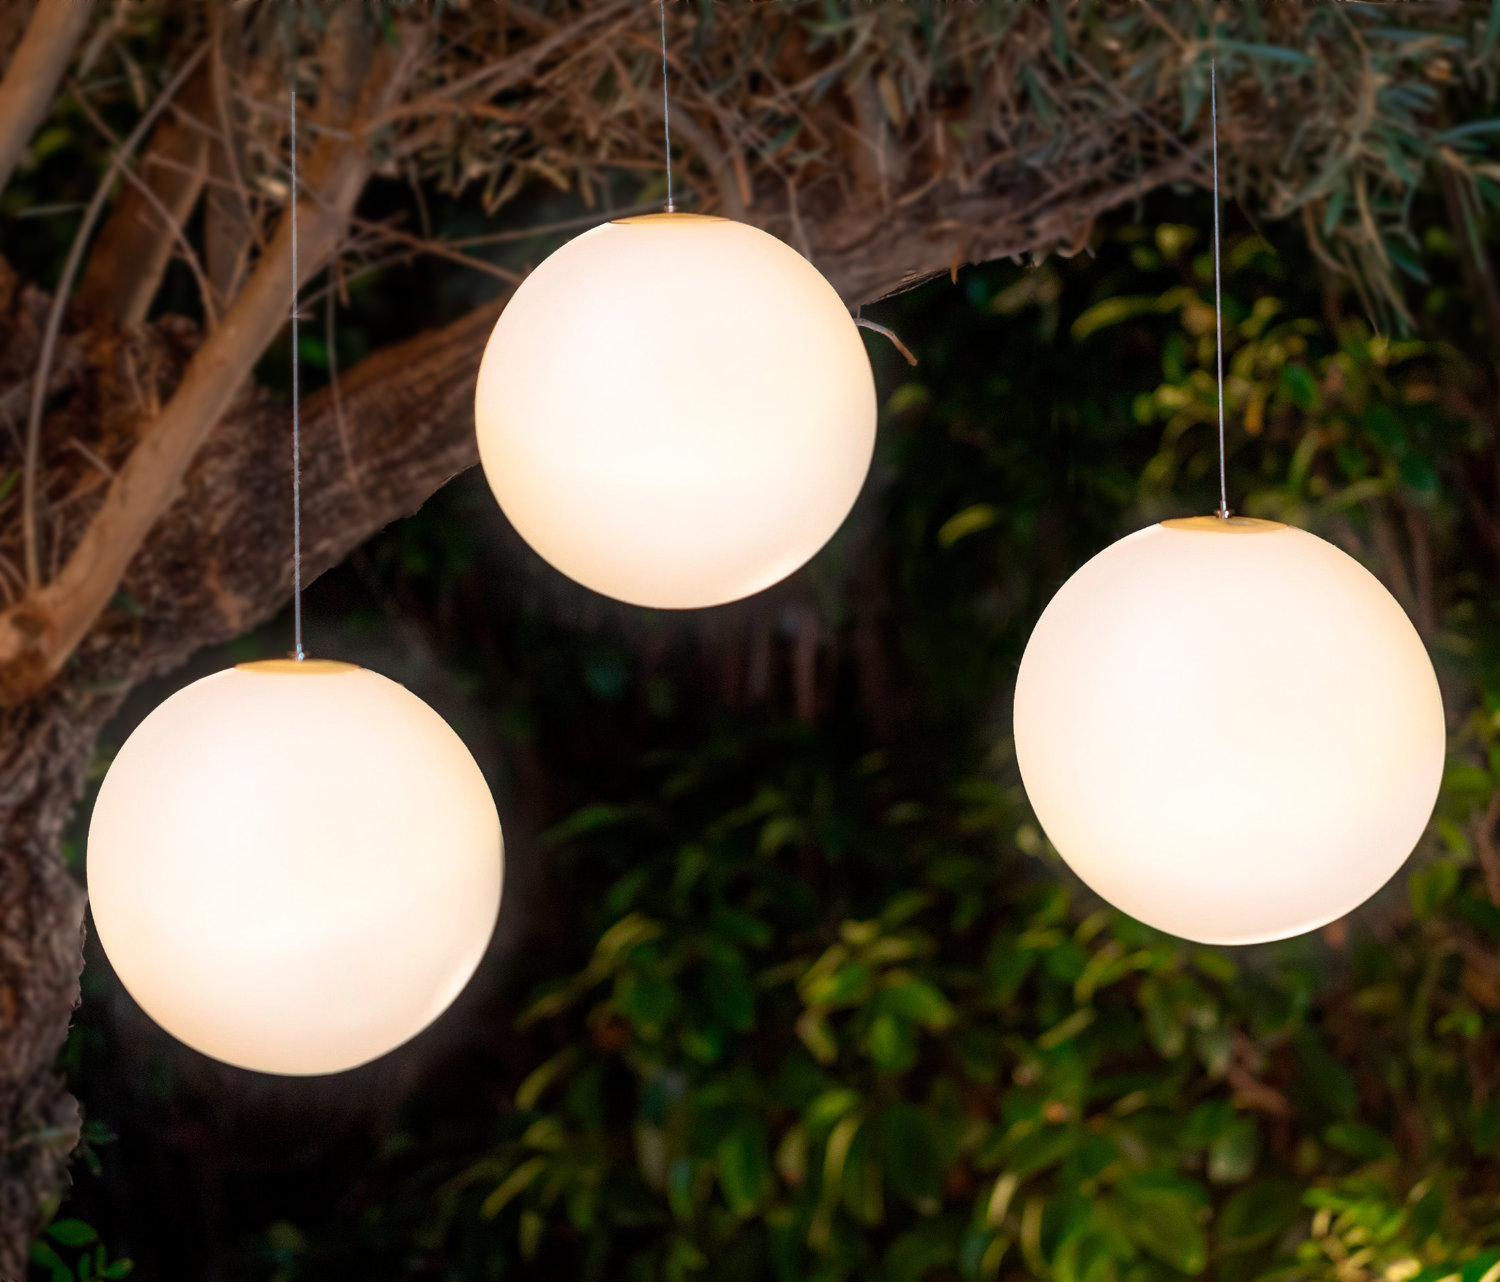 LED-Kugelleuchten mieten für eine Beleuchtung draußen/outdoor